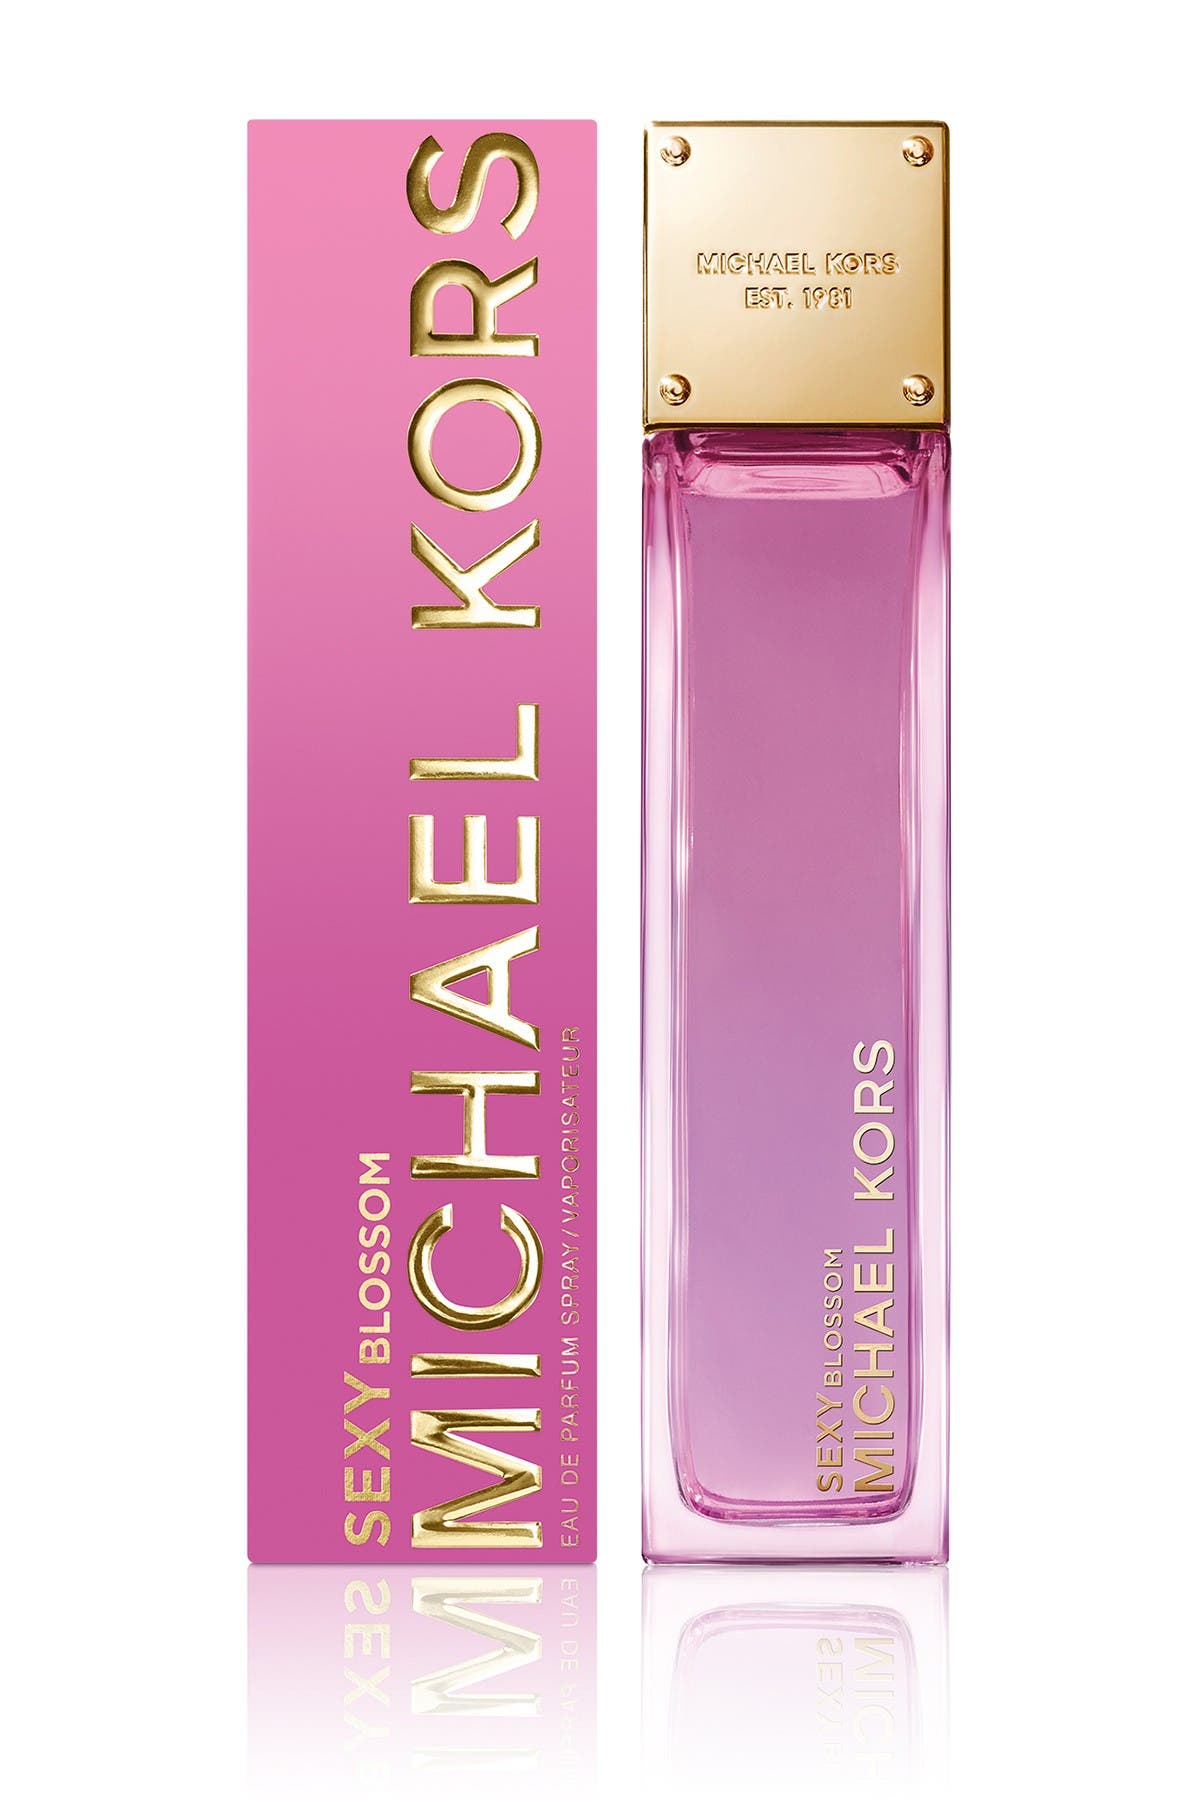 michael kors perfume pink